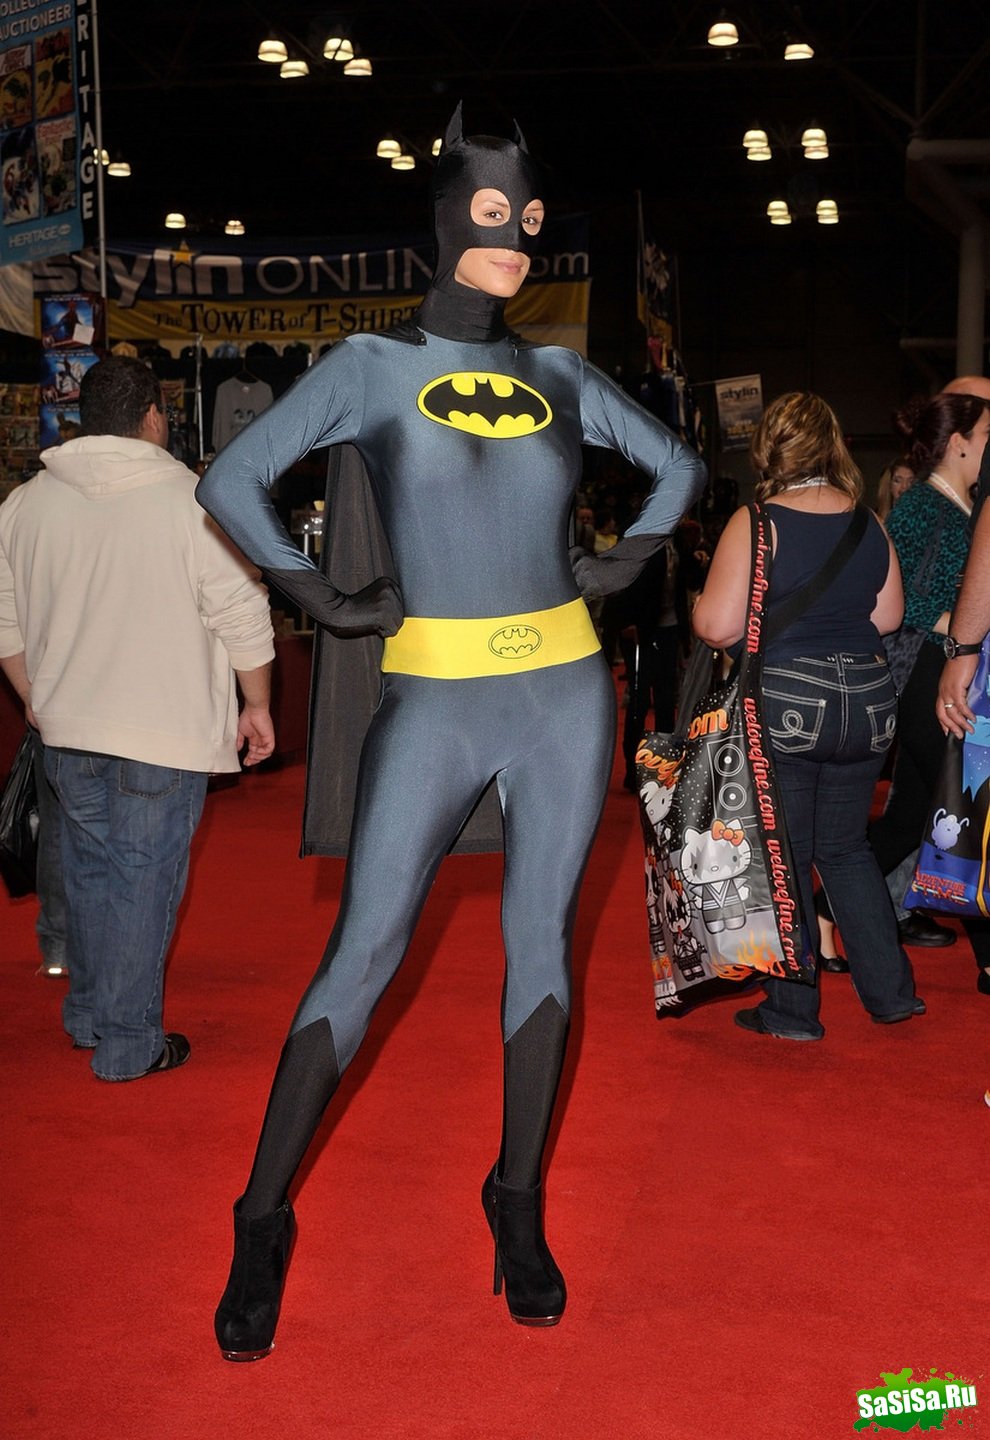   New York Comic Con 2012 (21 )